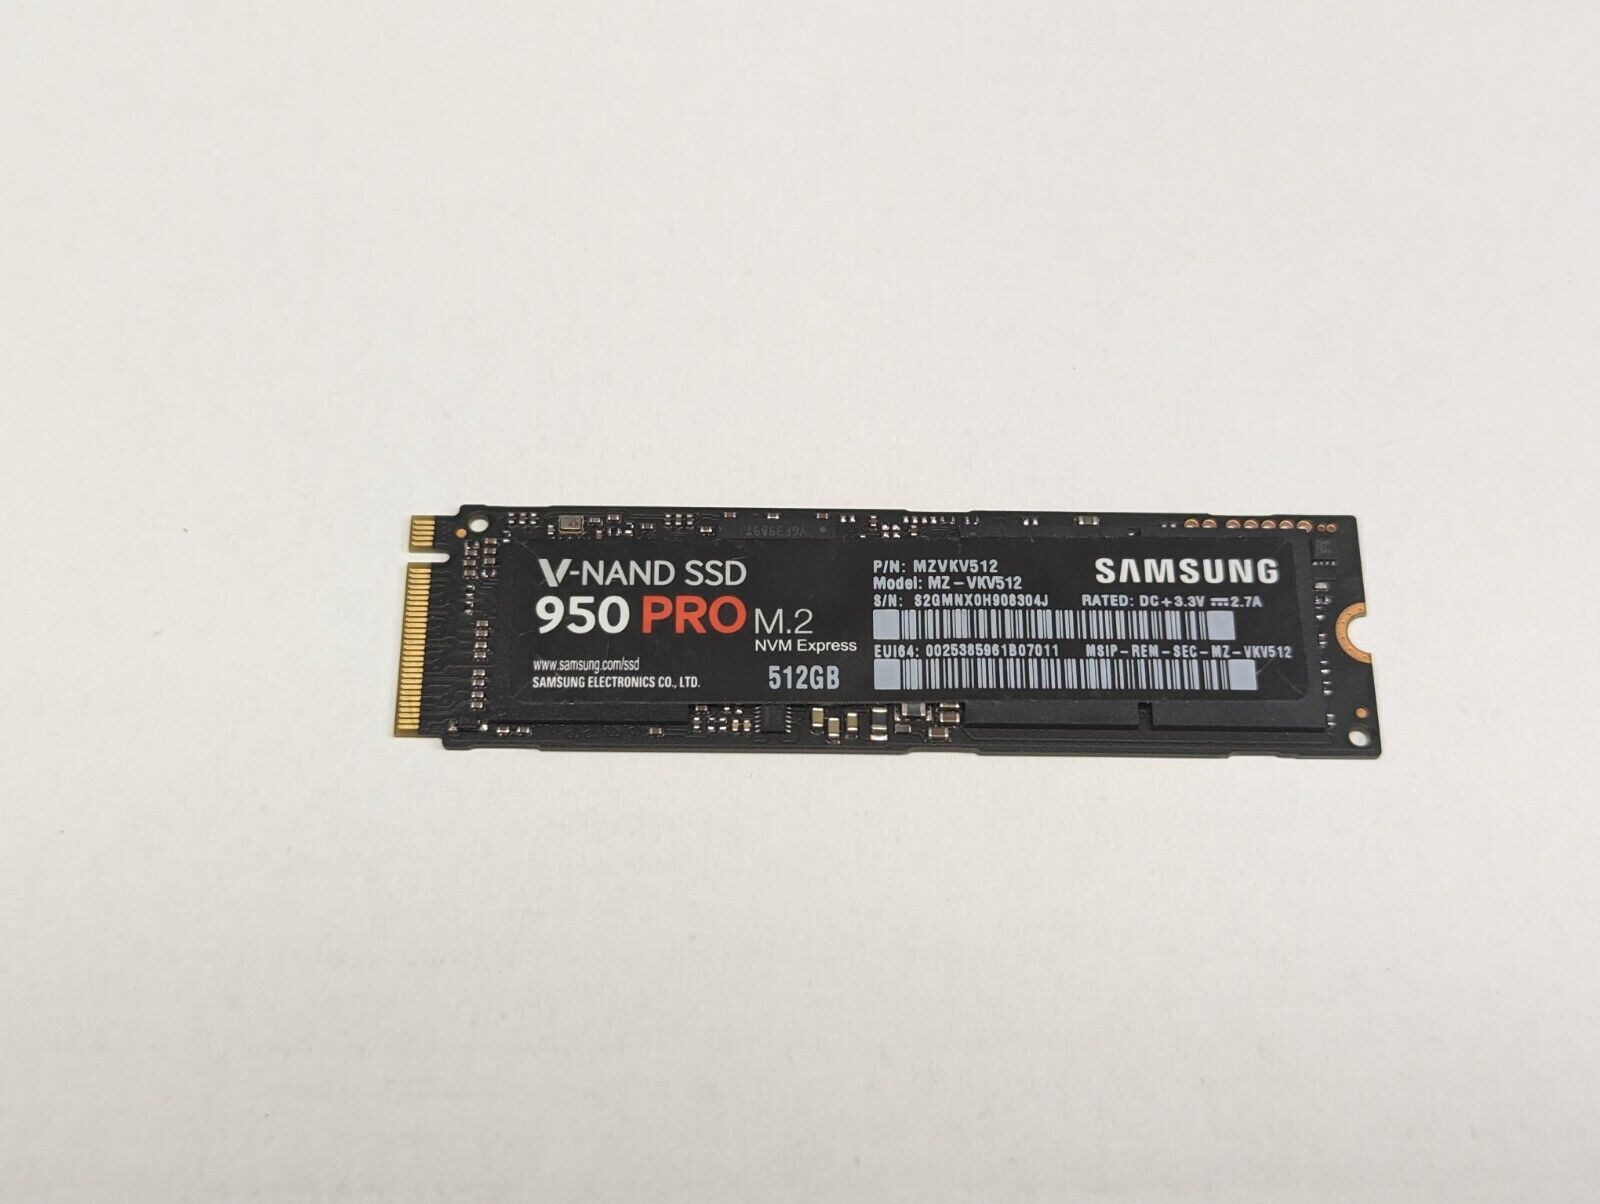 SAMSUNG V-NAND SSD 950 PRO M.2 NVM Express 512GB  MZ-VKV512 ** TESTED **